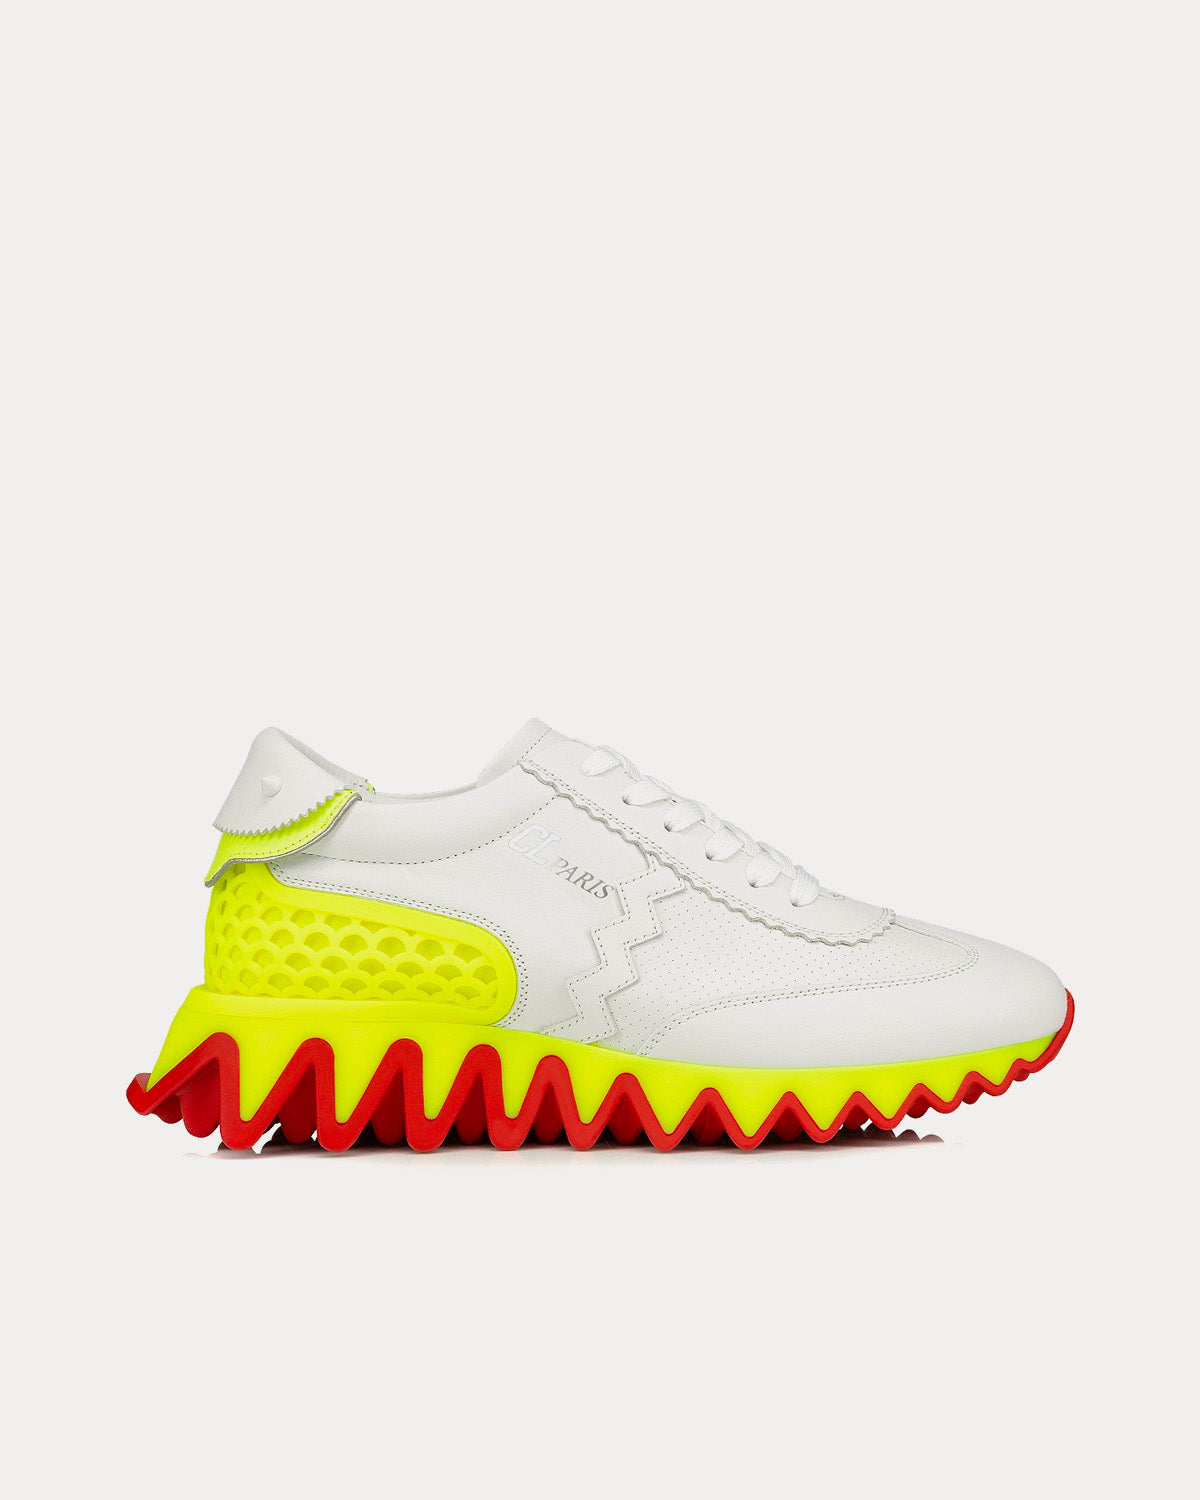 Christian Louboutin Fun Vieira White / Yellow Low Top Sneakers